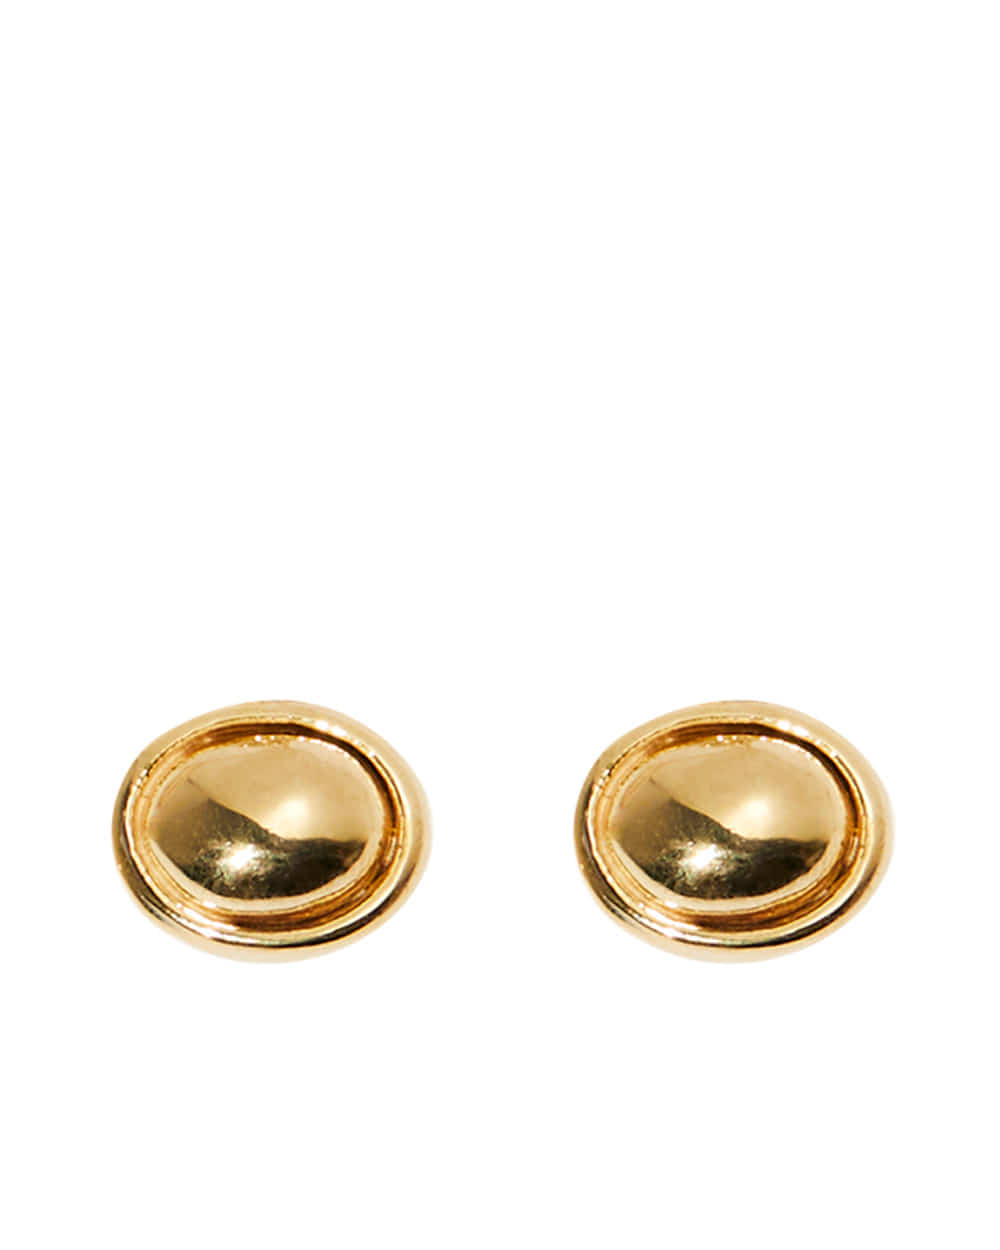 Noel silverstone earring / Gold